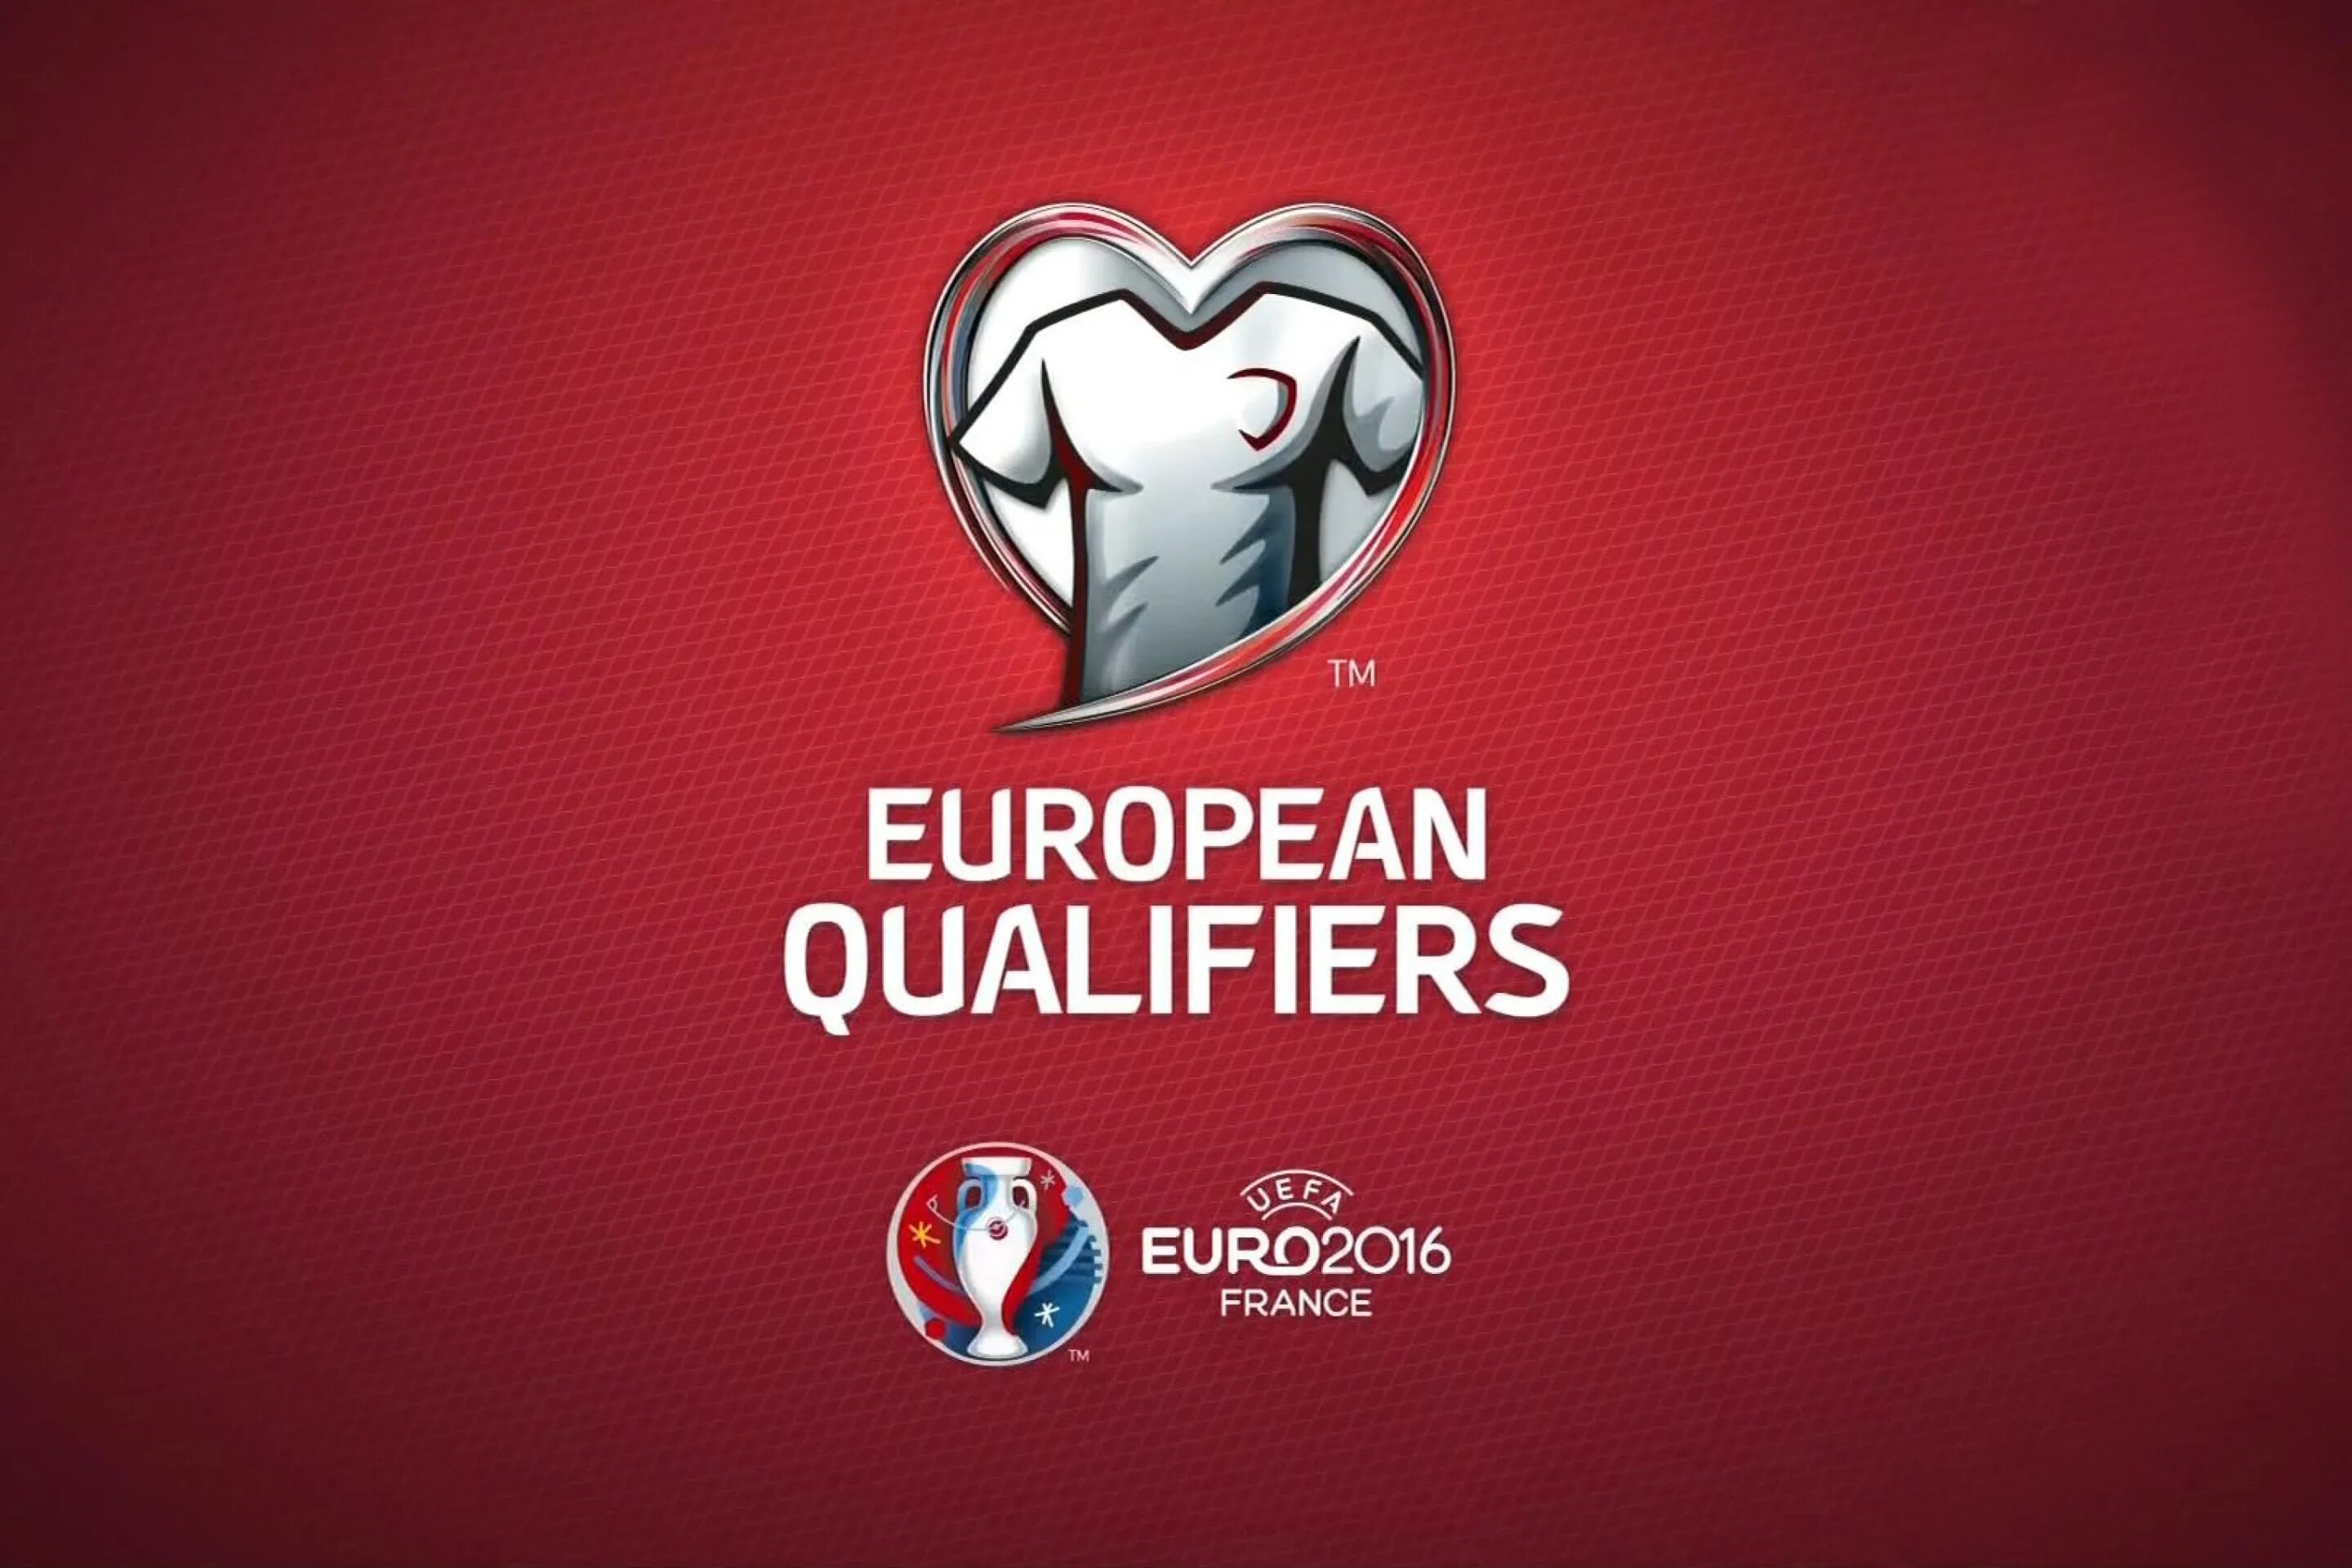 Eu qualifiers. Euro Qualifiers. UEFA Euro Qualifiers. Фон European Qualifiers. UEFA European Qualifiers.